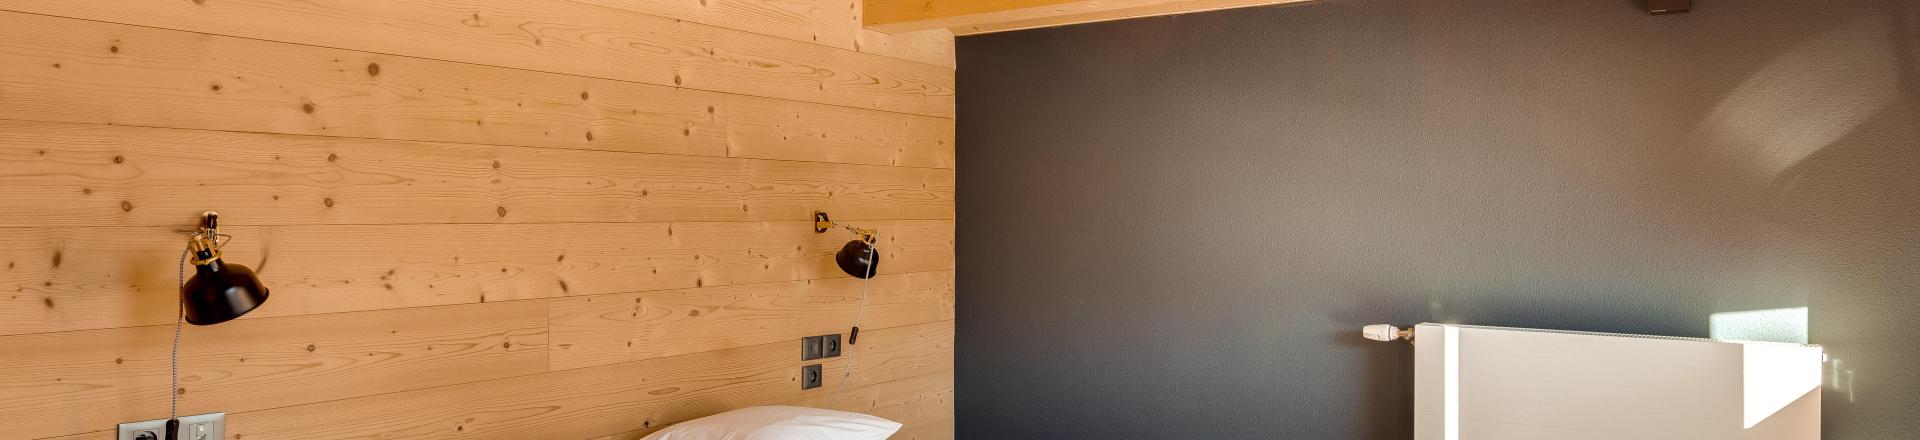 Rent in ski resort Semi-detached 4 room chalet 8 people (triplex) - Résidence les Fermes du Mont Blanc - Combloux - Bedroom